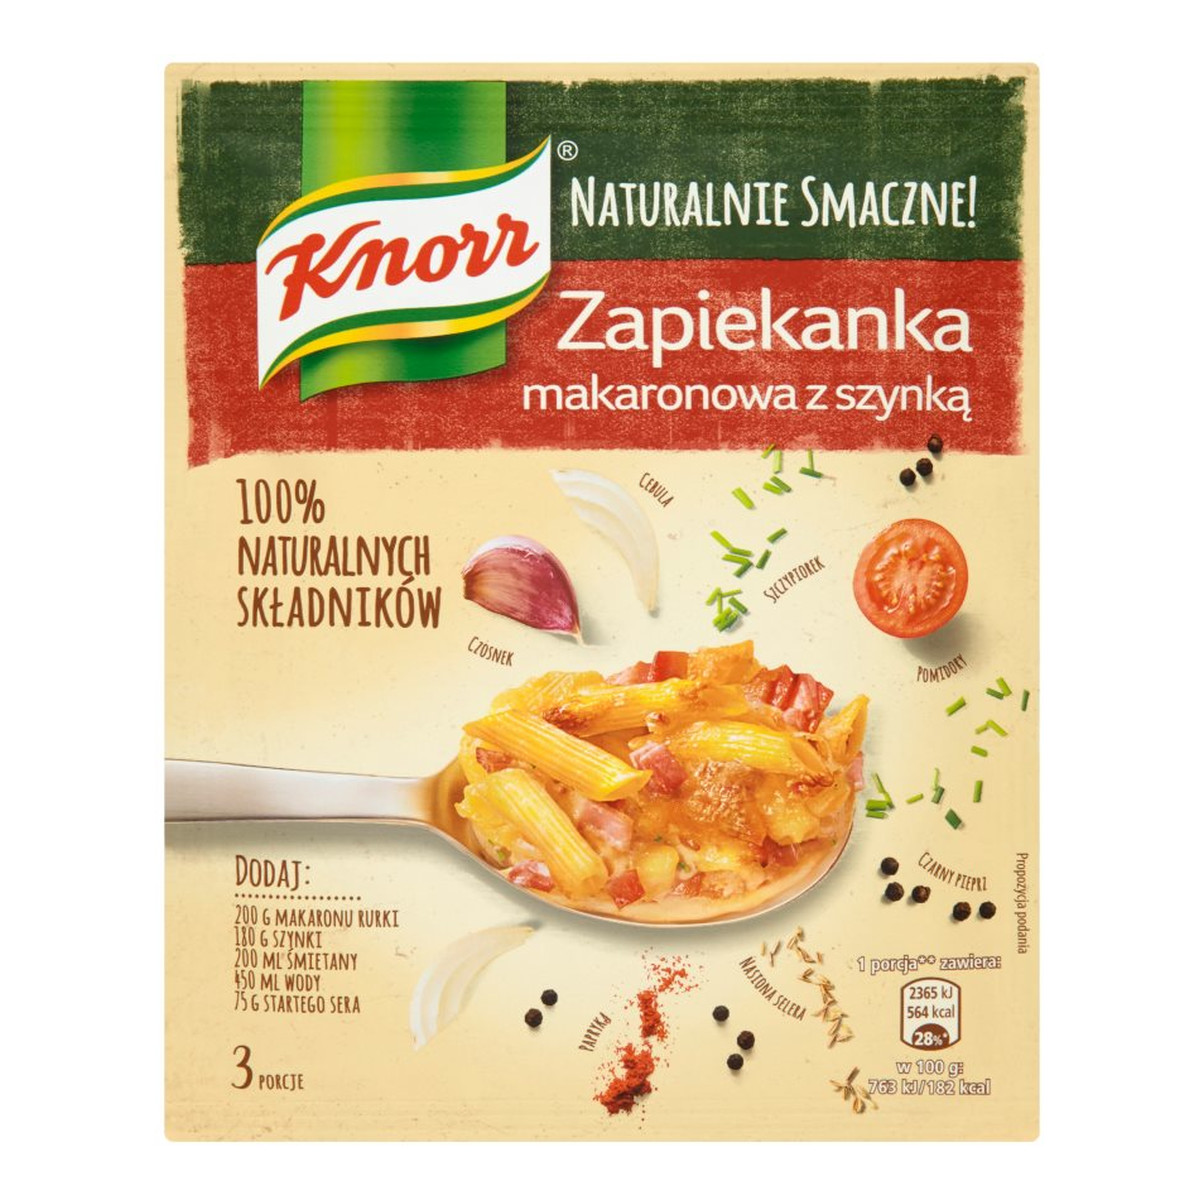 Knorr Naturalnie Smaczne! zapiekanka makaronowa z szynką 44g